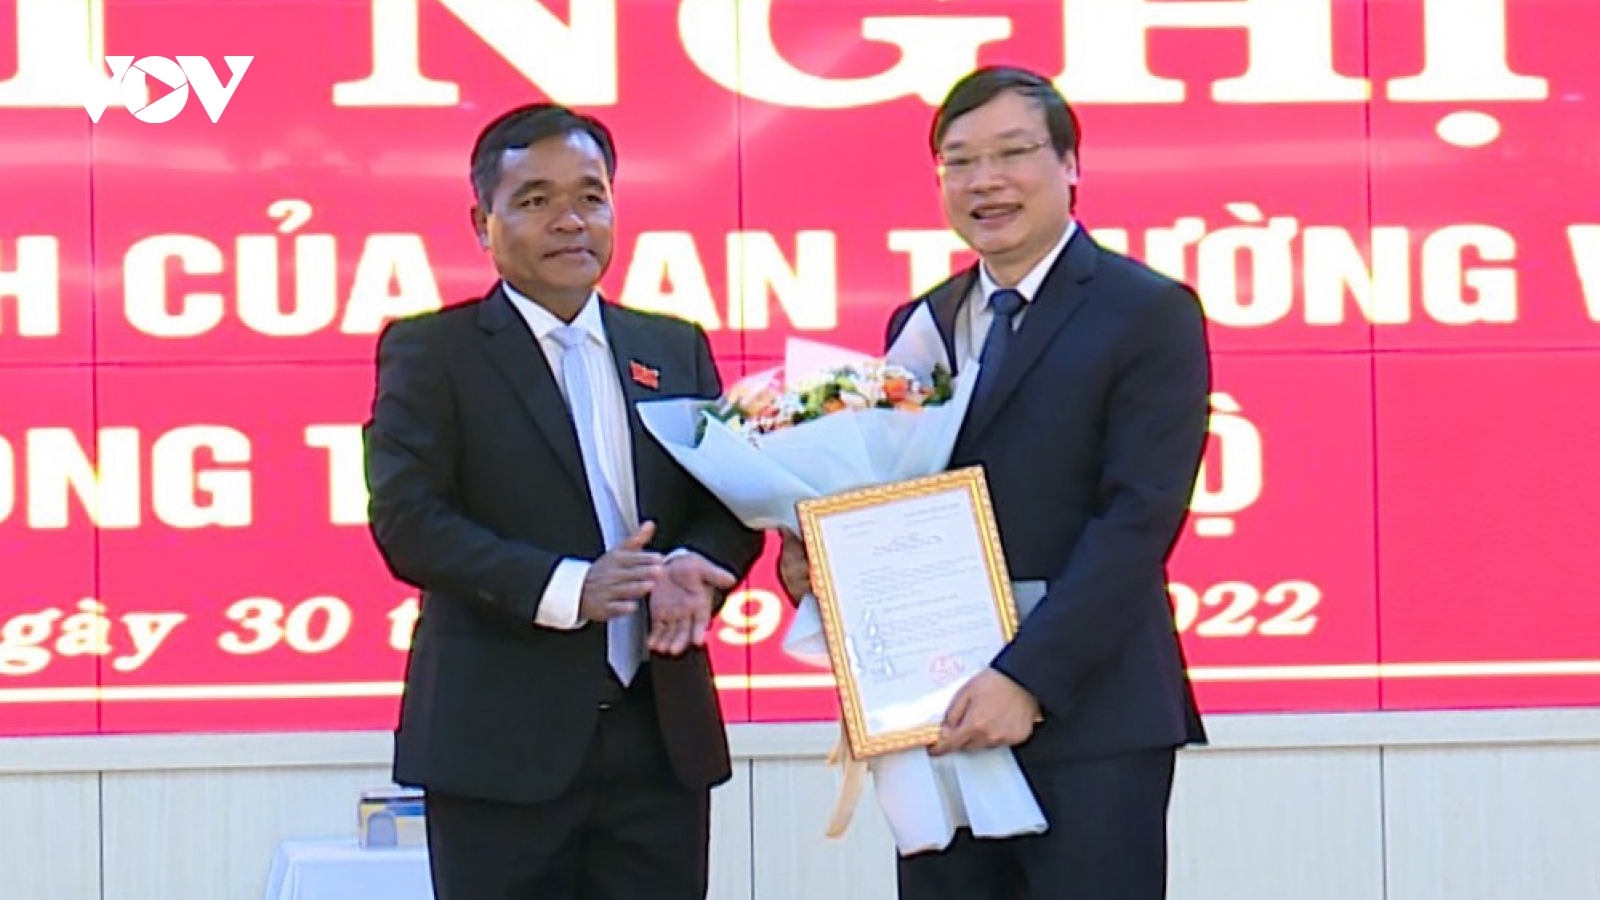 Ông Trương Hải Long được chỉ định làm Bí thư Ban cán sự Đảng UBND tỉnh Gia Lai